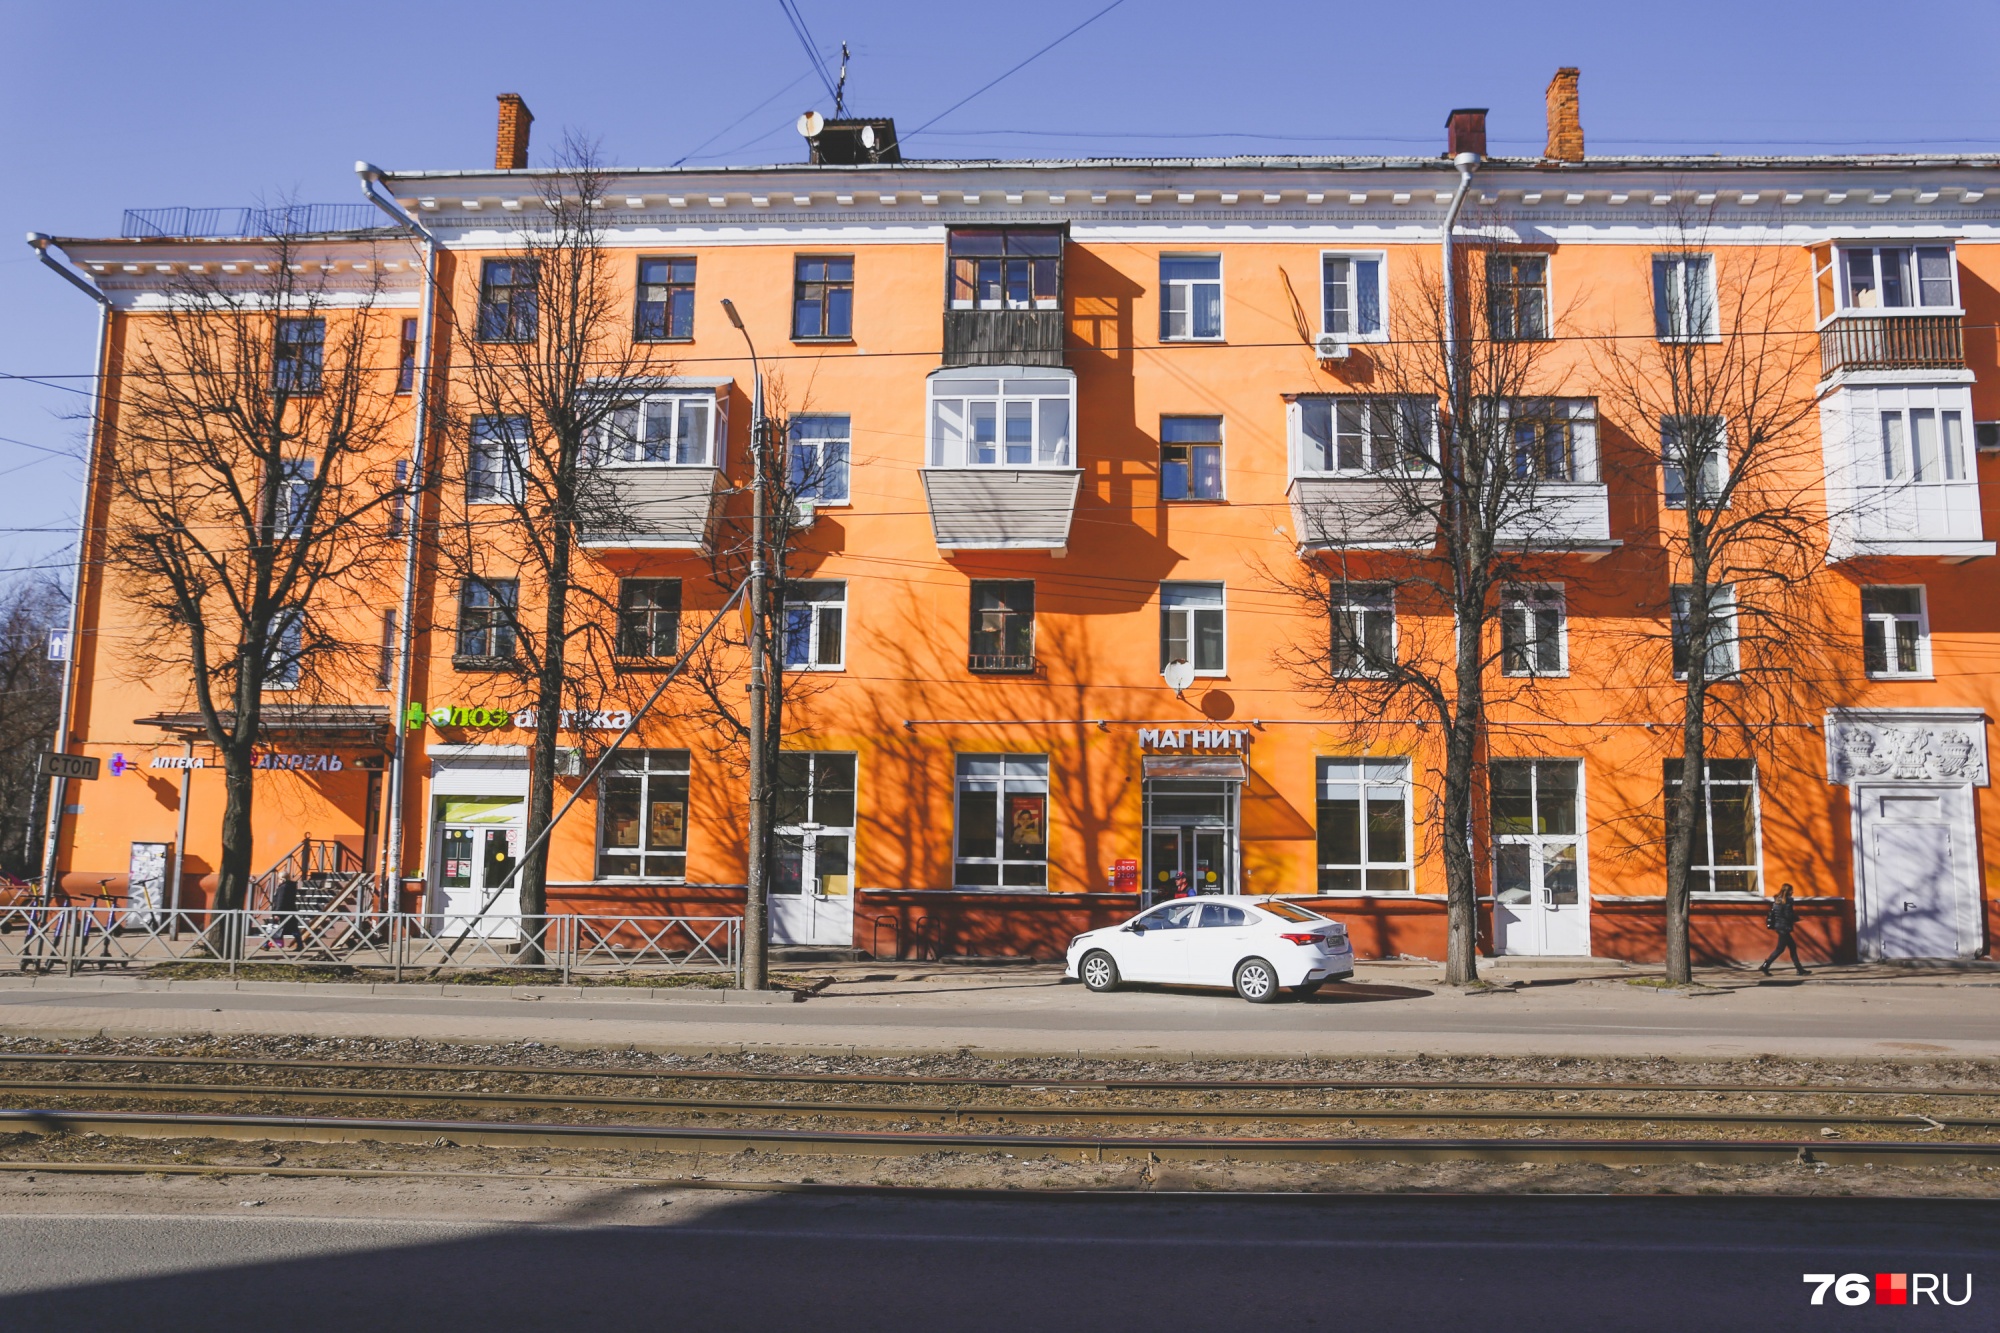 Думаете, где такой ярко-оранжевый (или это теракот?) дом? Да, это снова улица Чкалова